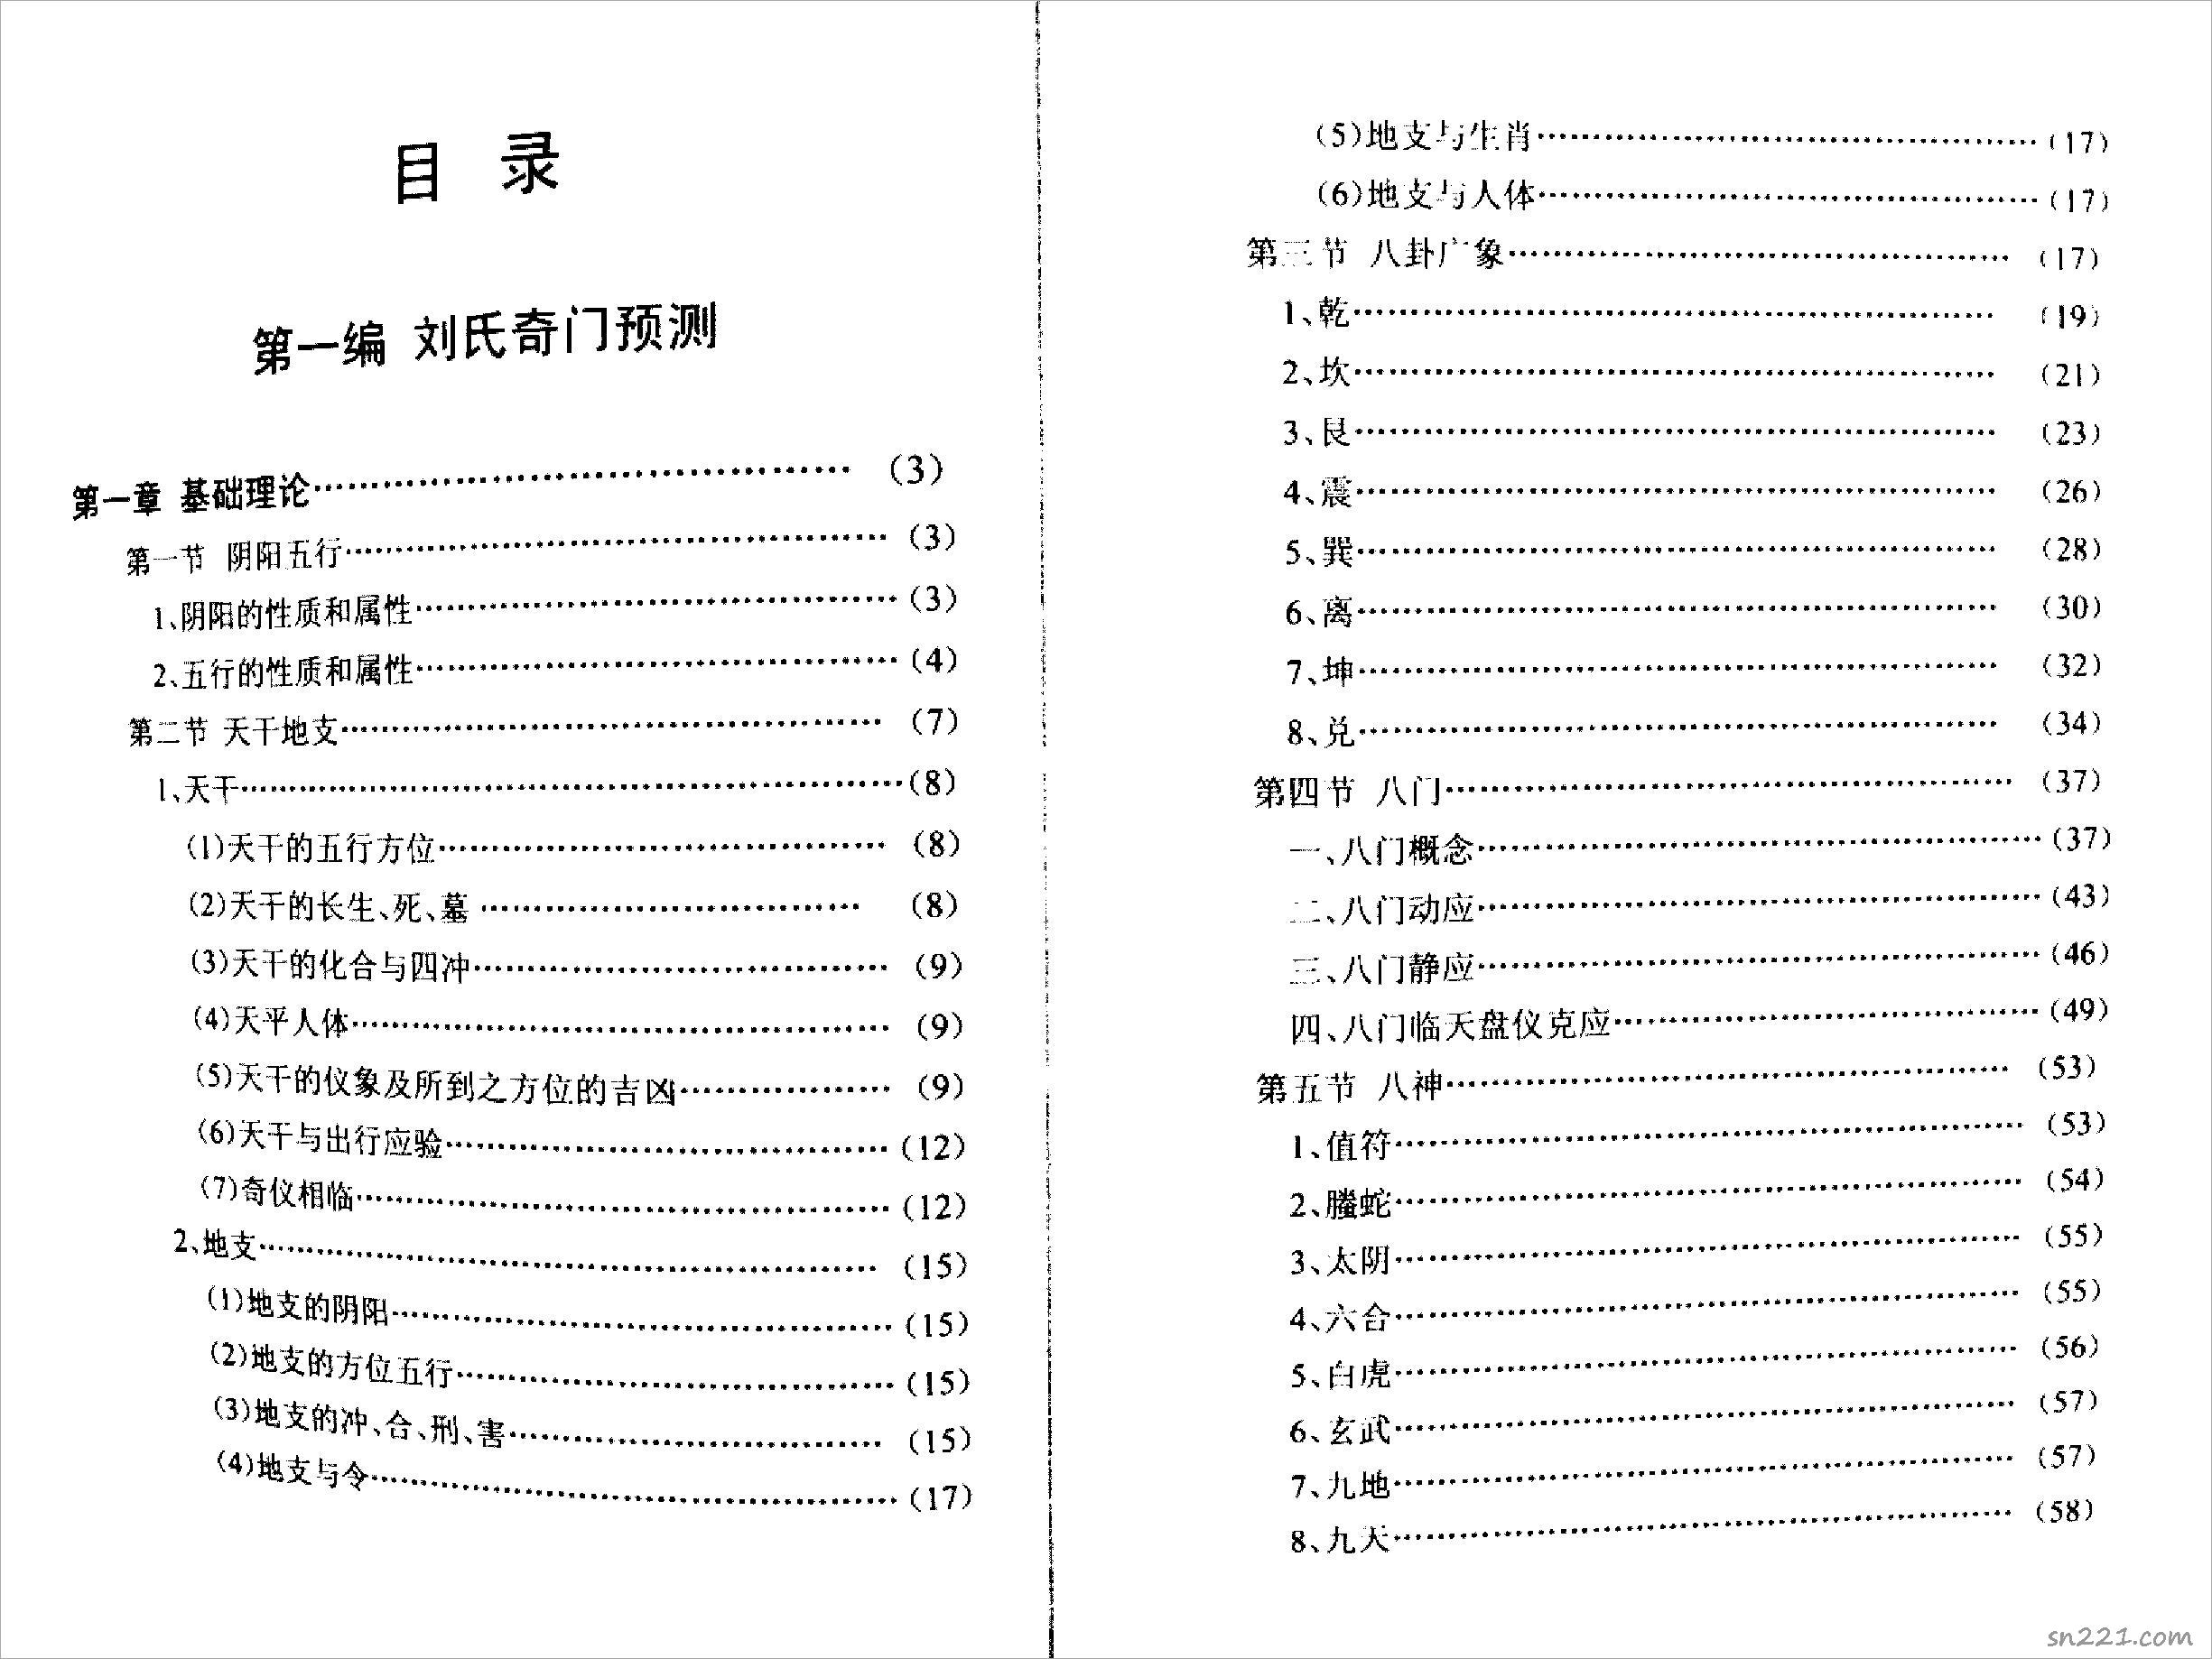 劉氏奇門秘籙[第一編(劉氏奇門預測)].pdf